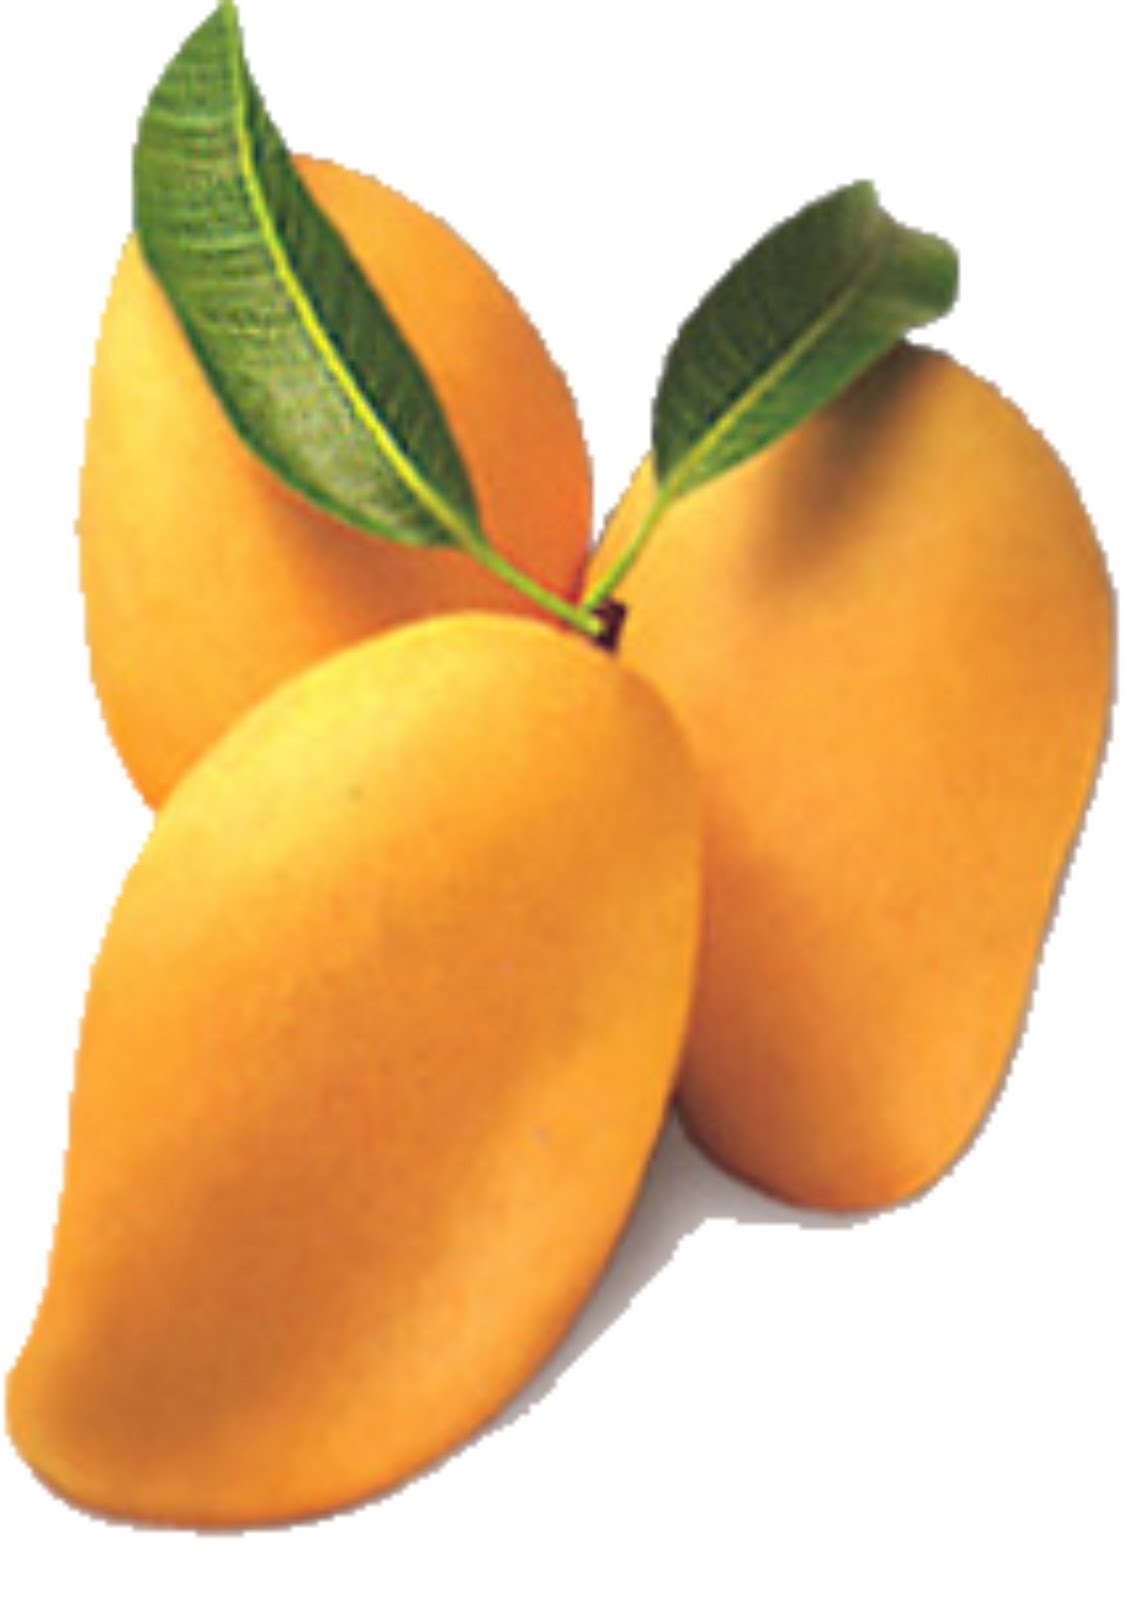 Mango02